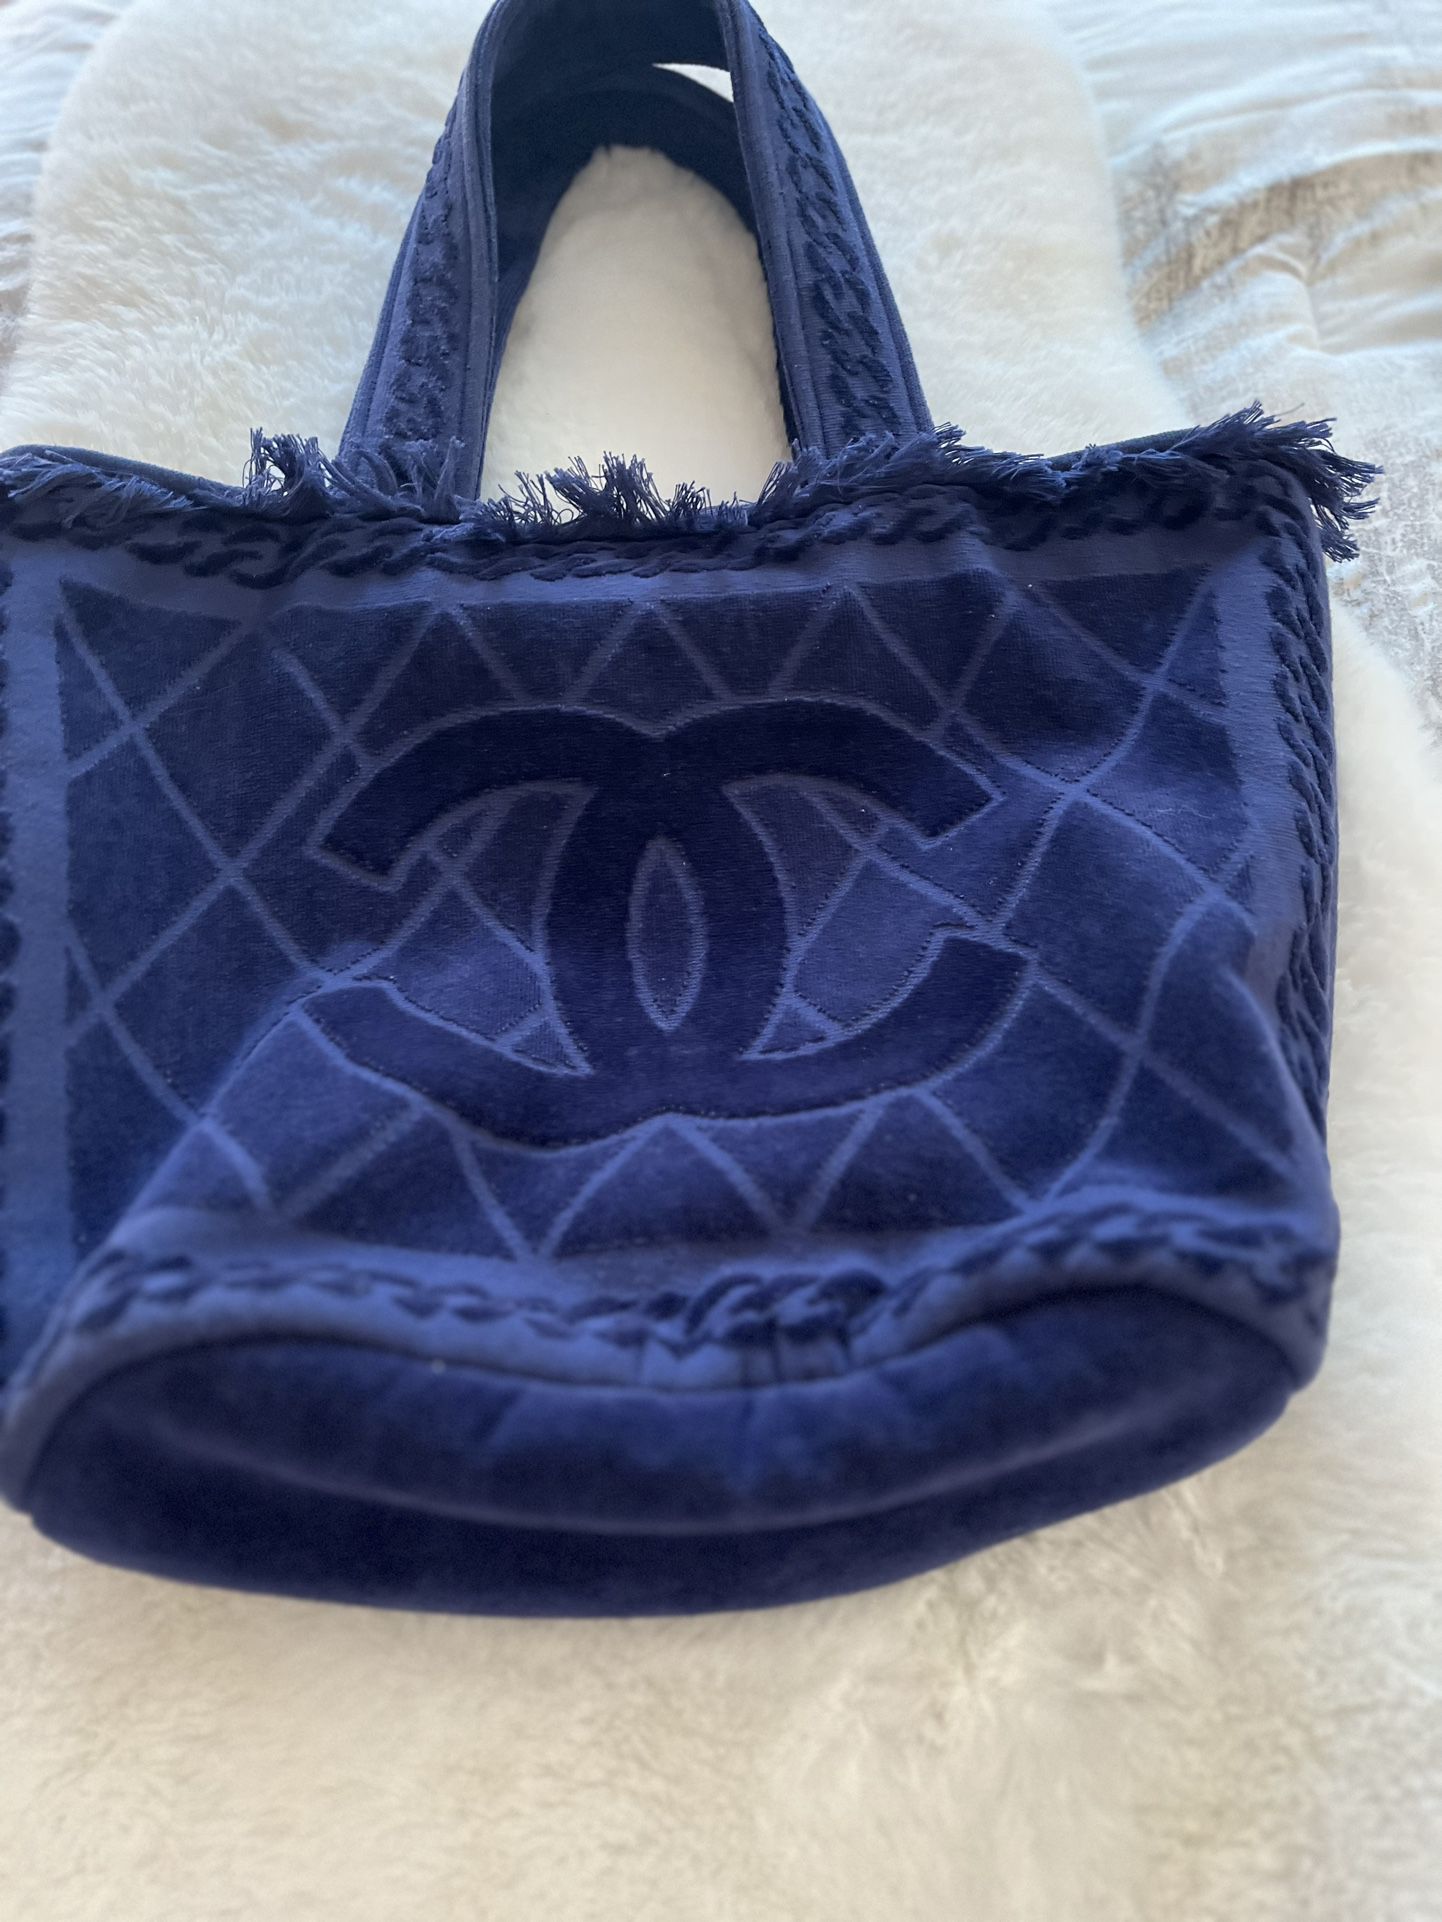 Chanel Blue Fringe Tote Bag